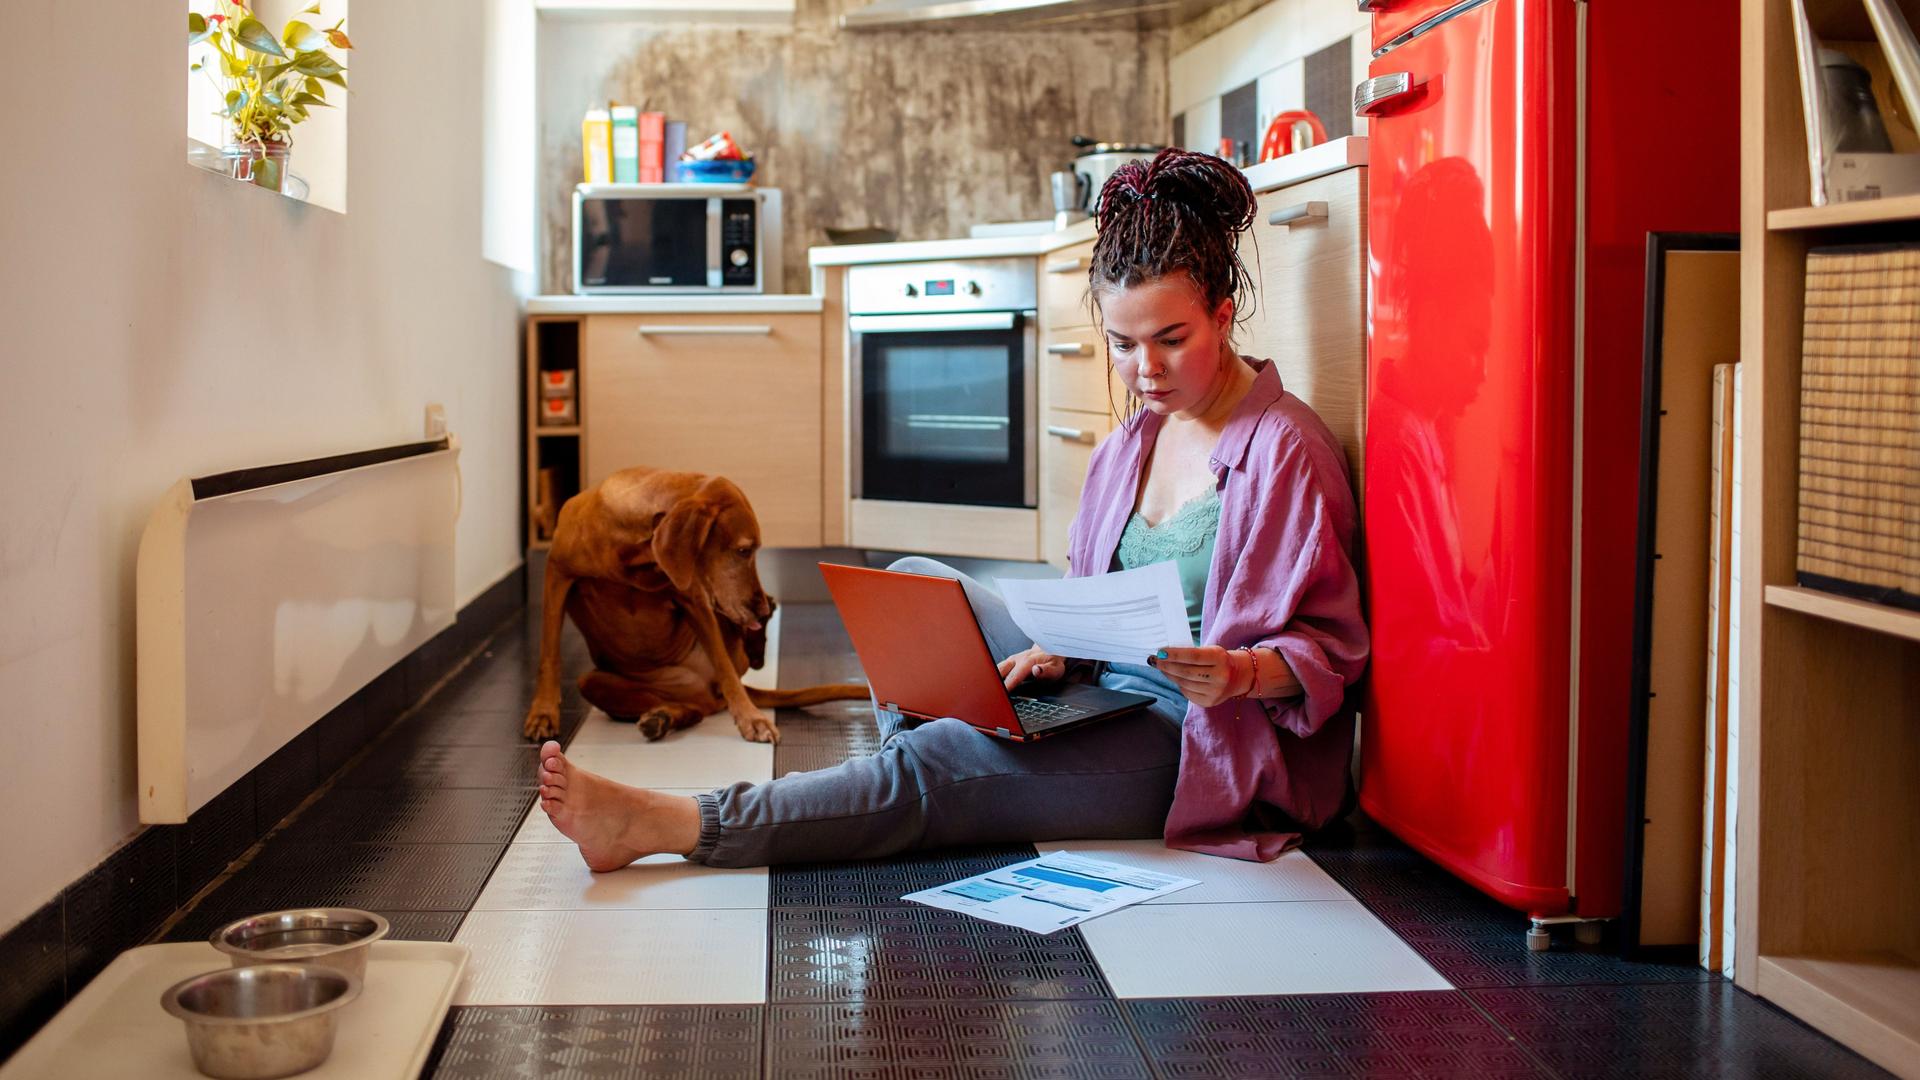 Junge Frau sitzt mit rotem Laptop und Papierdokumenten vor einem roten Kühlschrank auf dem Küchenboden. Neben ihr liegt ein brauner Hund.